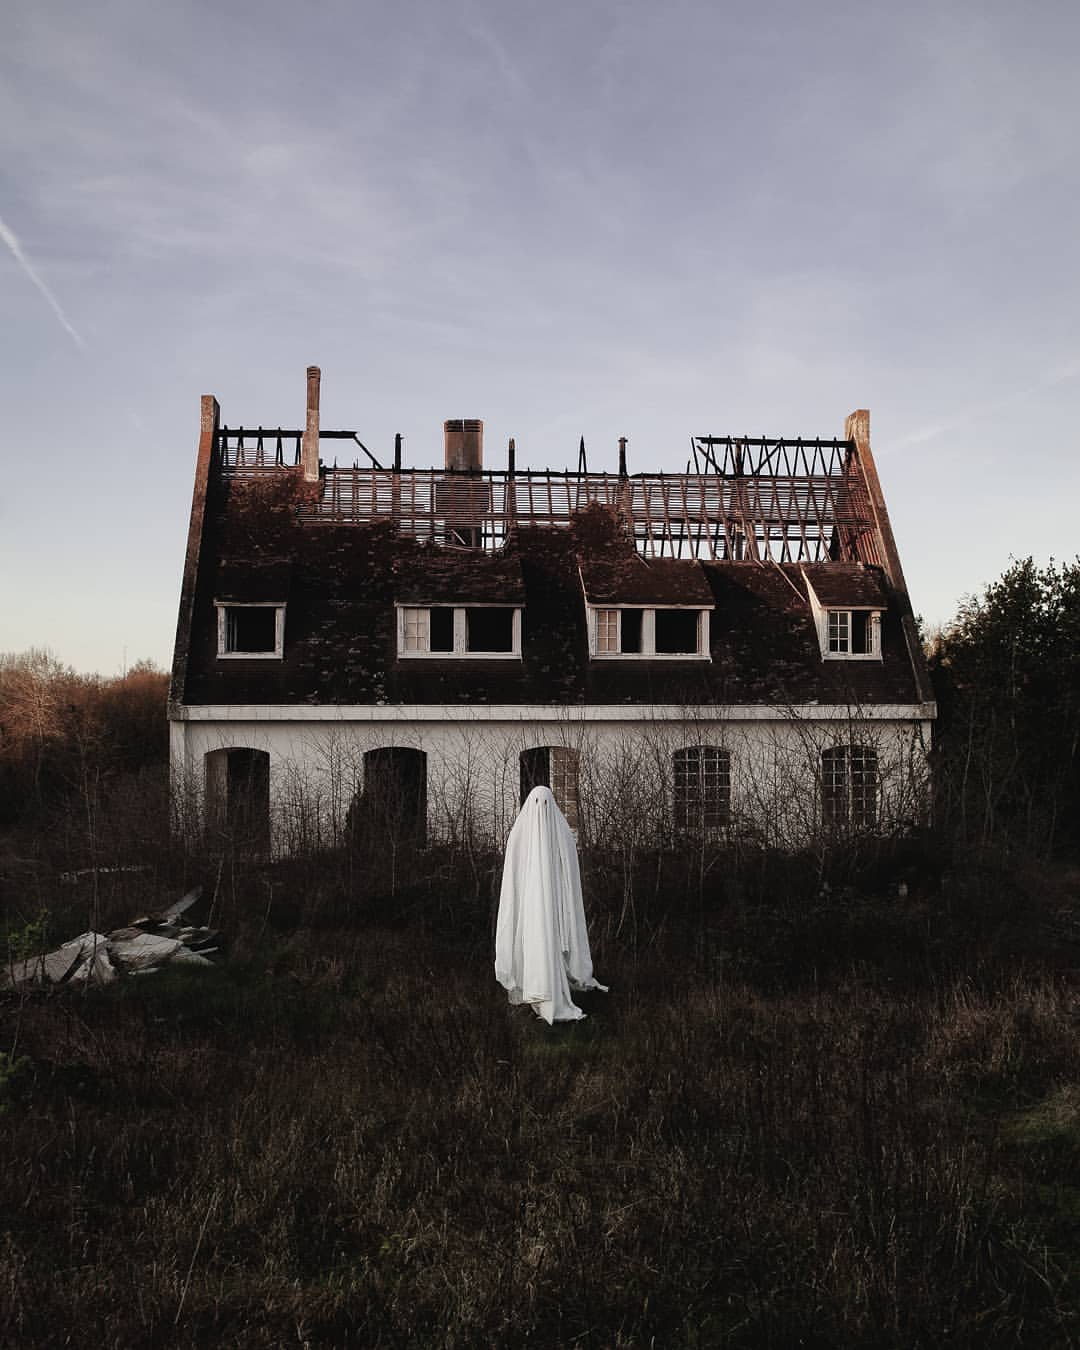 au lever du jour, devant une maison dont le toit est complètement détruit ou pas terminé, le fantôme nous regarde.